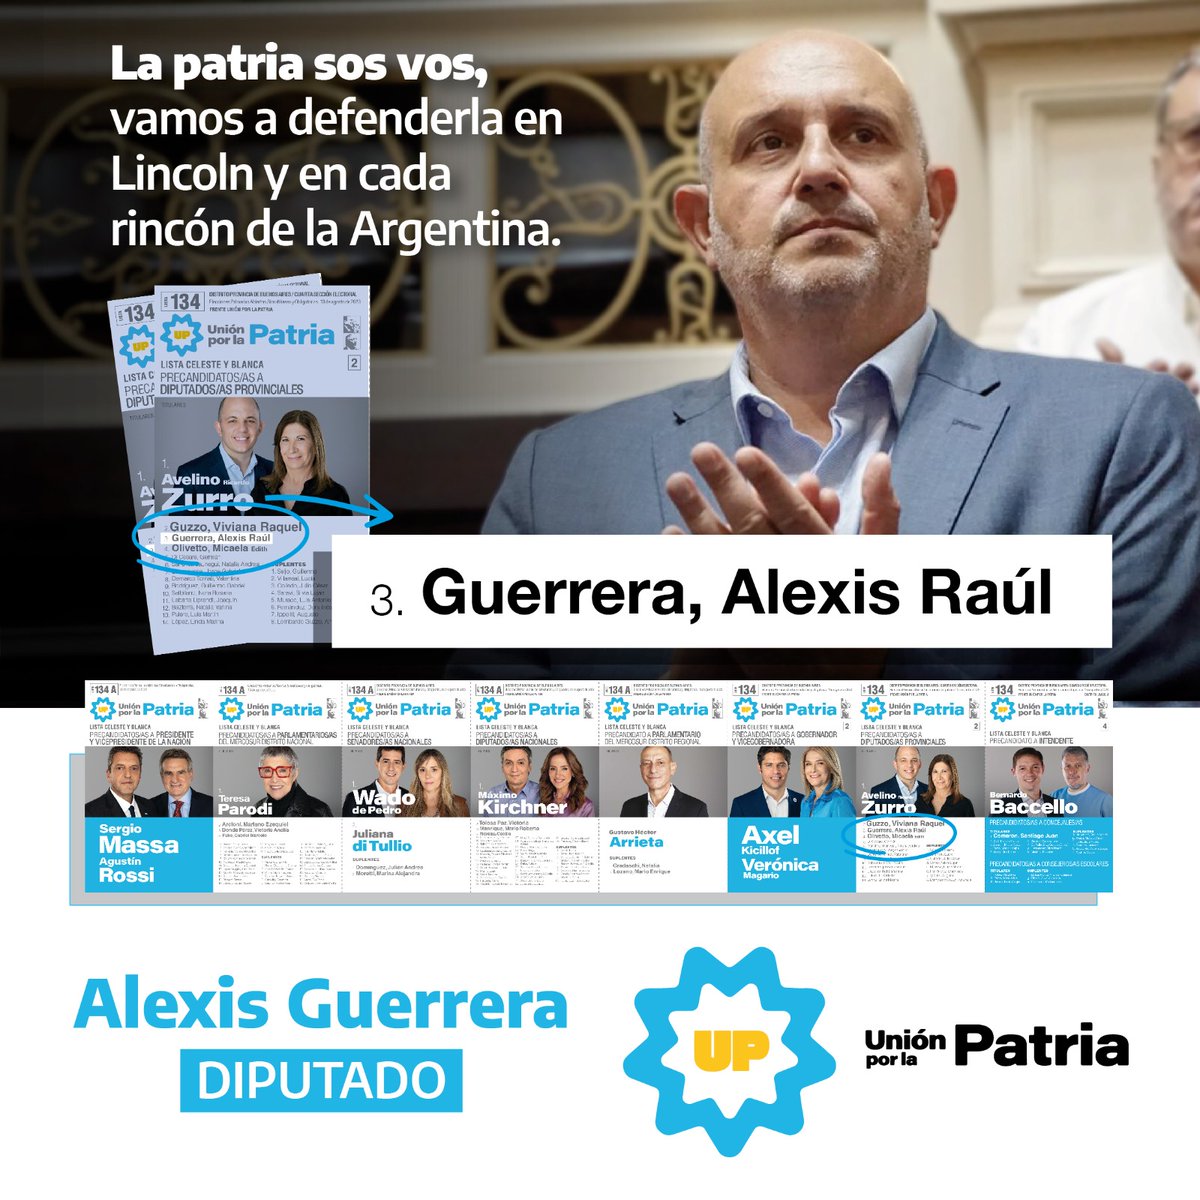 La Patria sos vos, vamos a defenderla en Lincoln y en cada rincón de la Argentina 💪🏼 ¡Vamos compañero, @AlexisGuerrera! Un ejemplo de gestión y compromiso de construcción para toda la región. #Bernardo2023 #OtroLincolnEsPosible